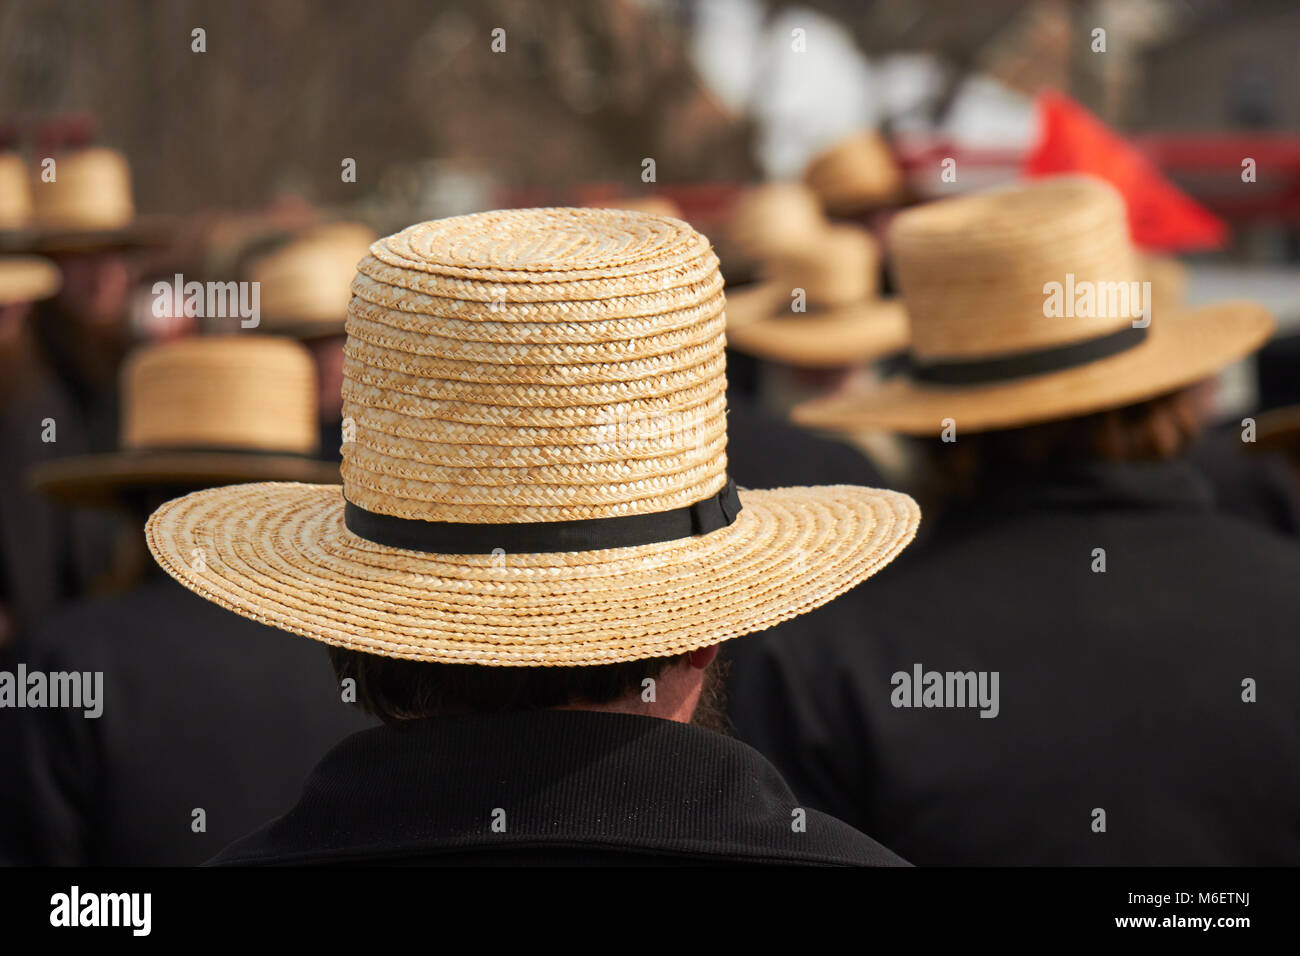 Cappello amish immagini e fotografie stock ad alta risoluzione - Alamy